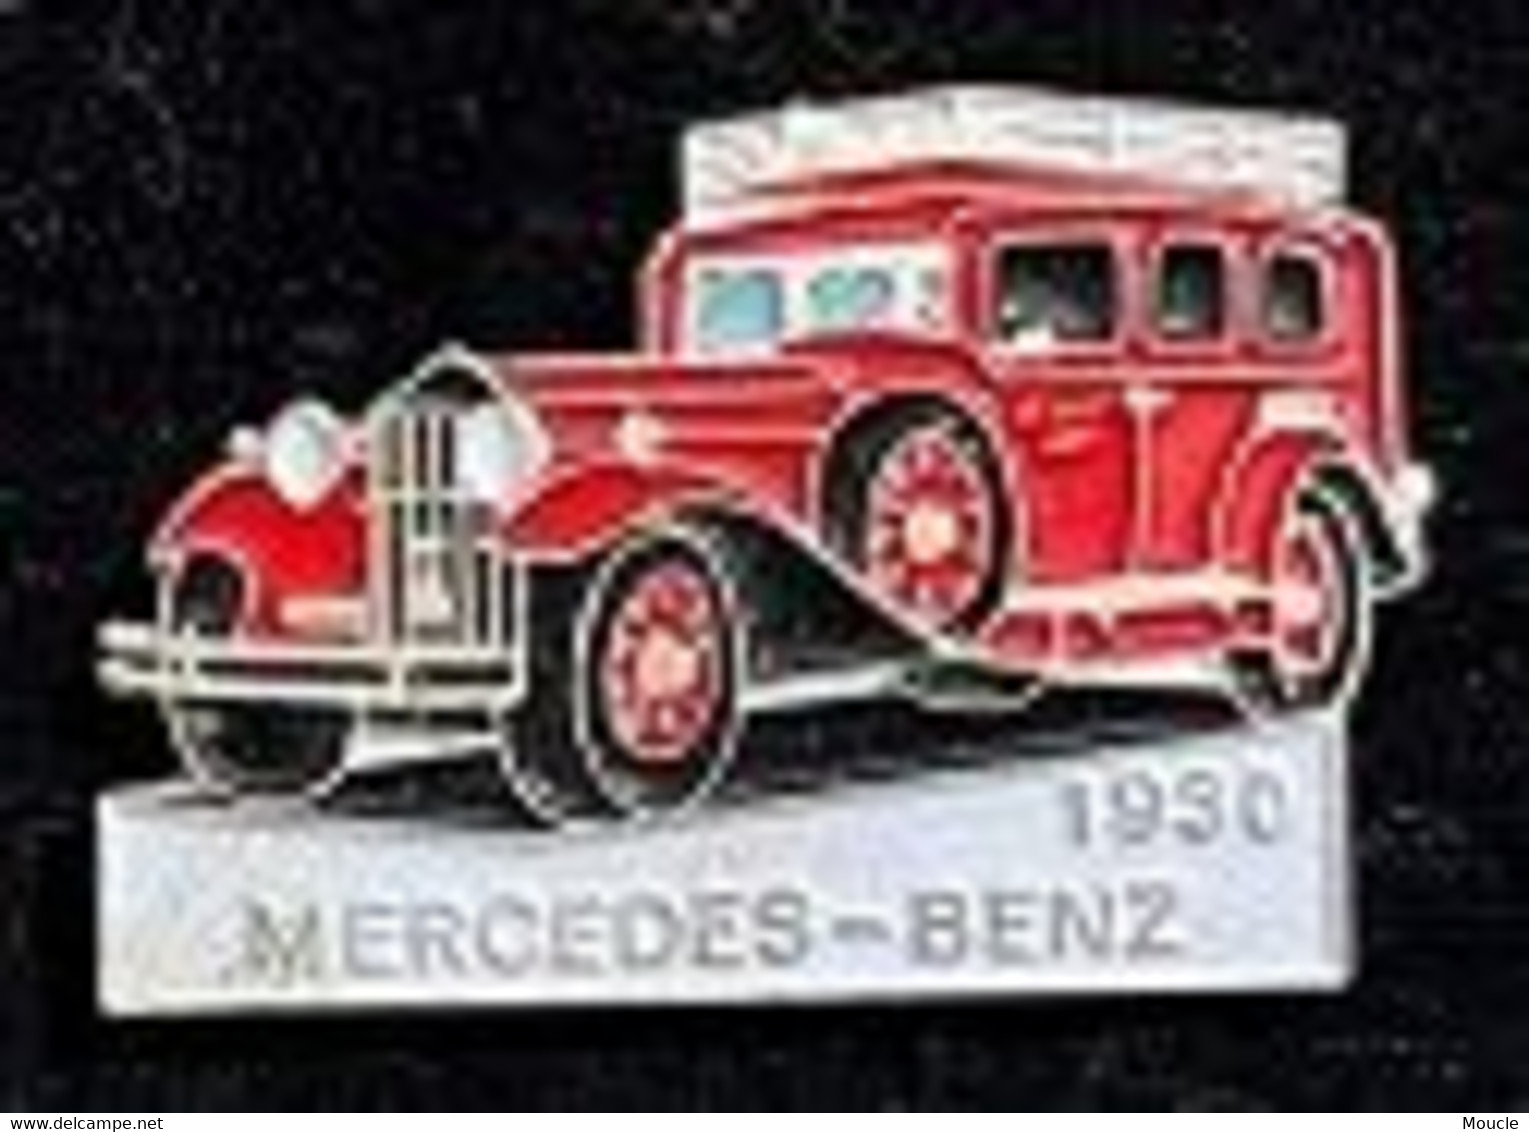 MERCEDES BENZ 1930 - ROUGE N°146 - SAPEURS POMPIERS - FEUEWEHRAUTO - VOITURE POMPIERS -CAR - AUTOMOBILE -     (30) - Firemen